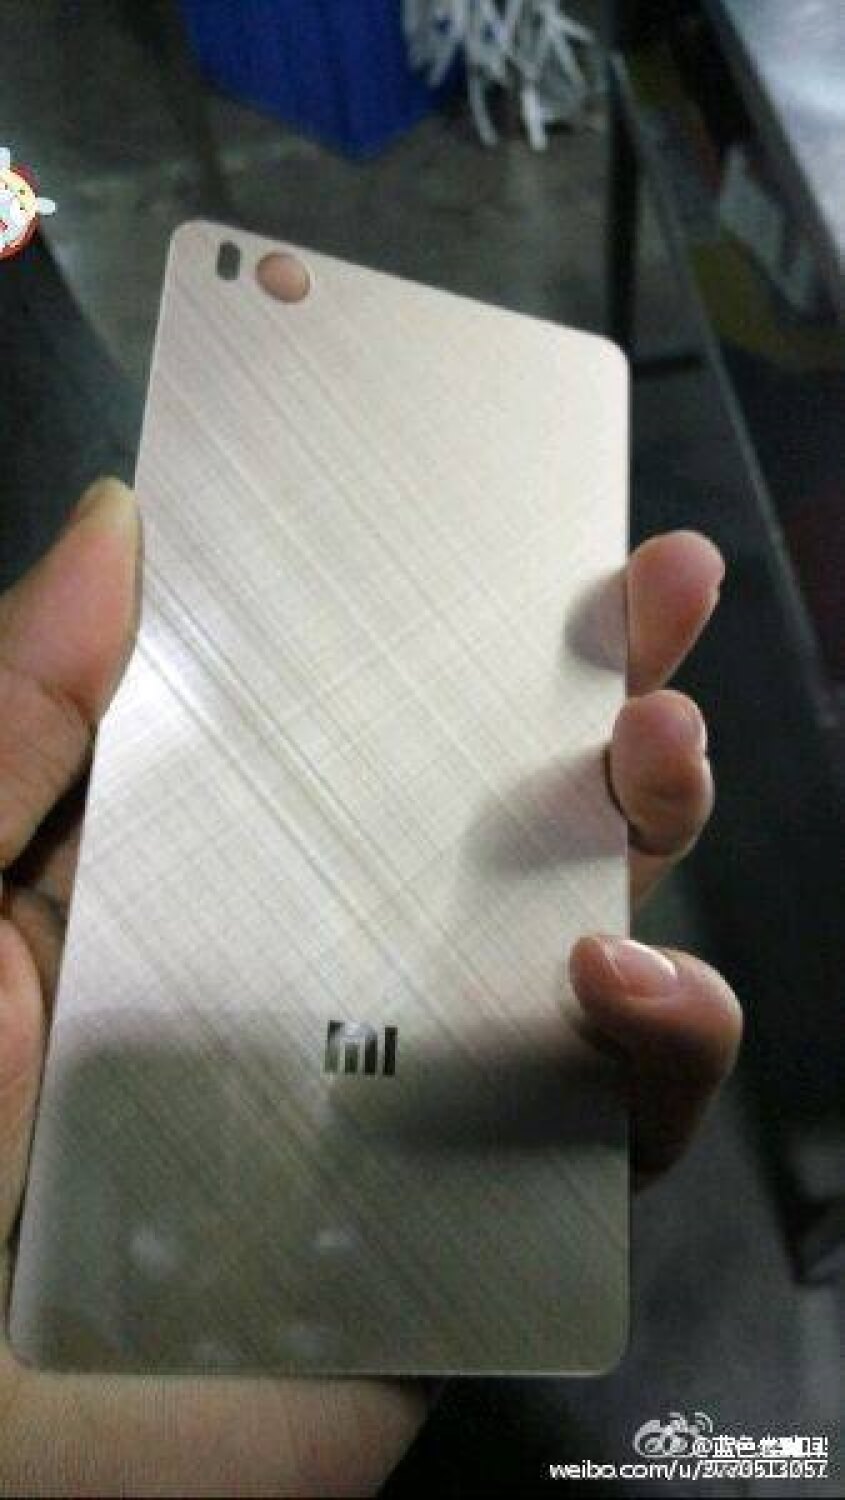 Новые подробности о Xiaomi Mi 5. Фото.